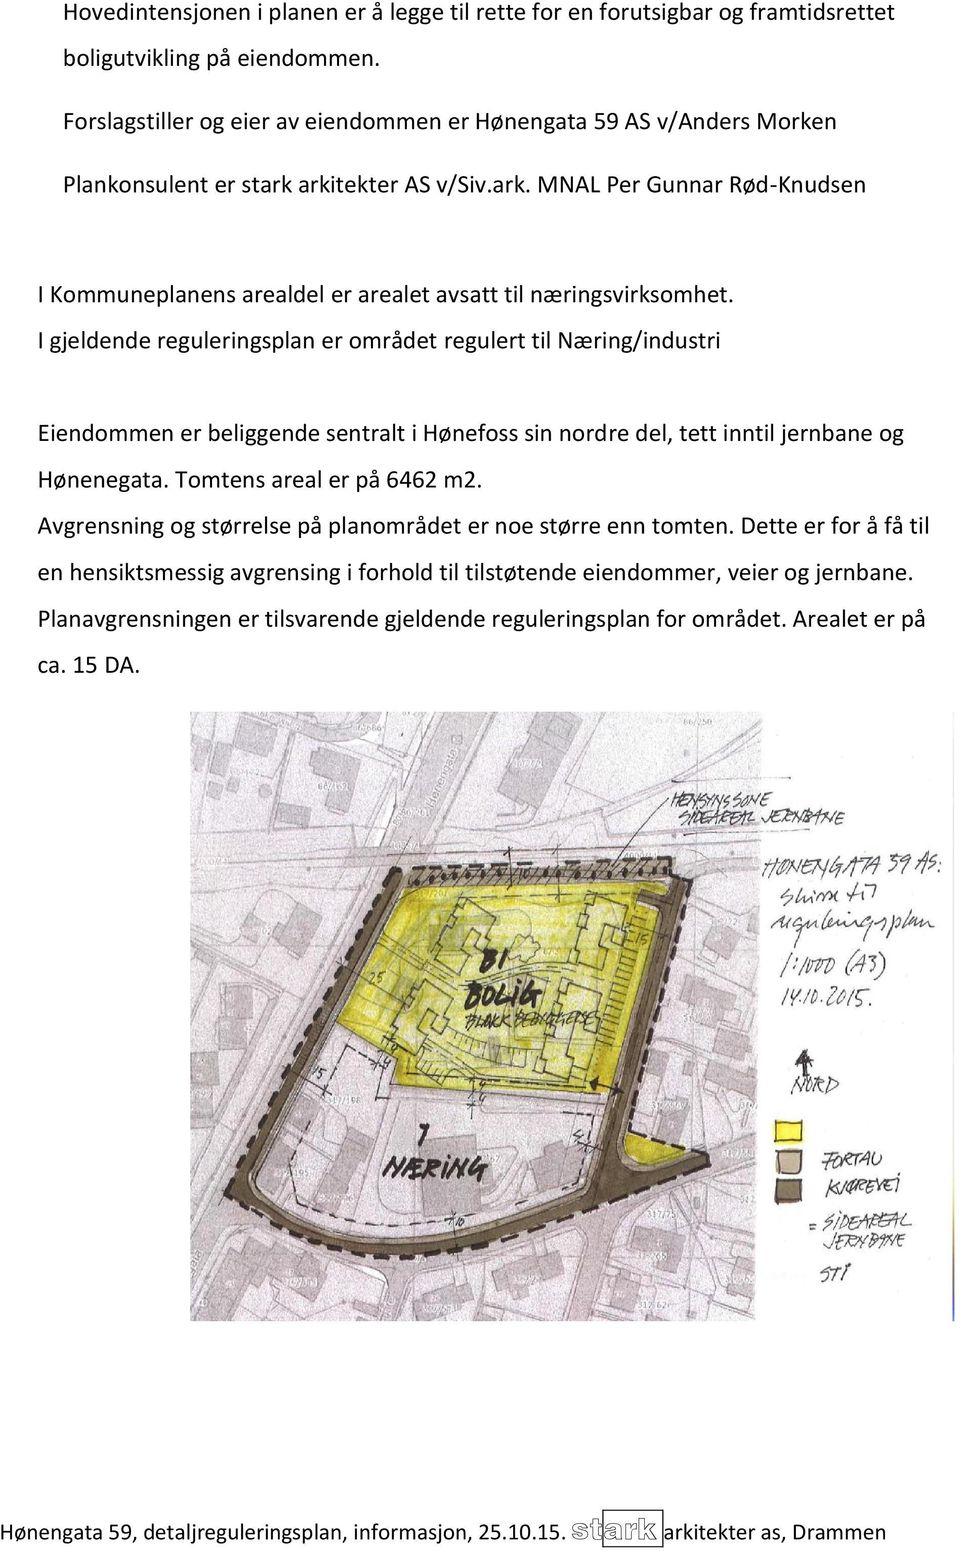 I gjeldende reguleringsplan er området regulert til Næring/industri Eiendommen er beliggende sentralt i Hønefoss sin nordre del, tett inntil jernbane og Hønenegata. Tomtens areal er på 6462 m2.